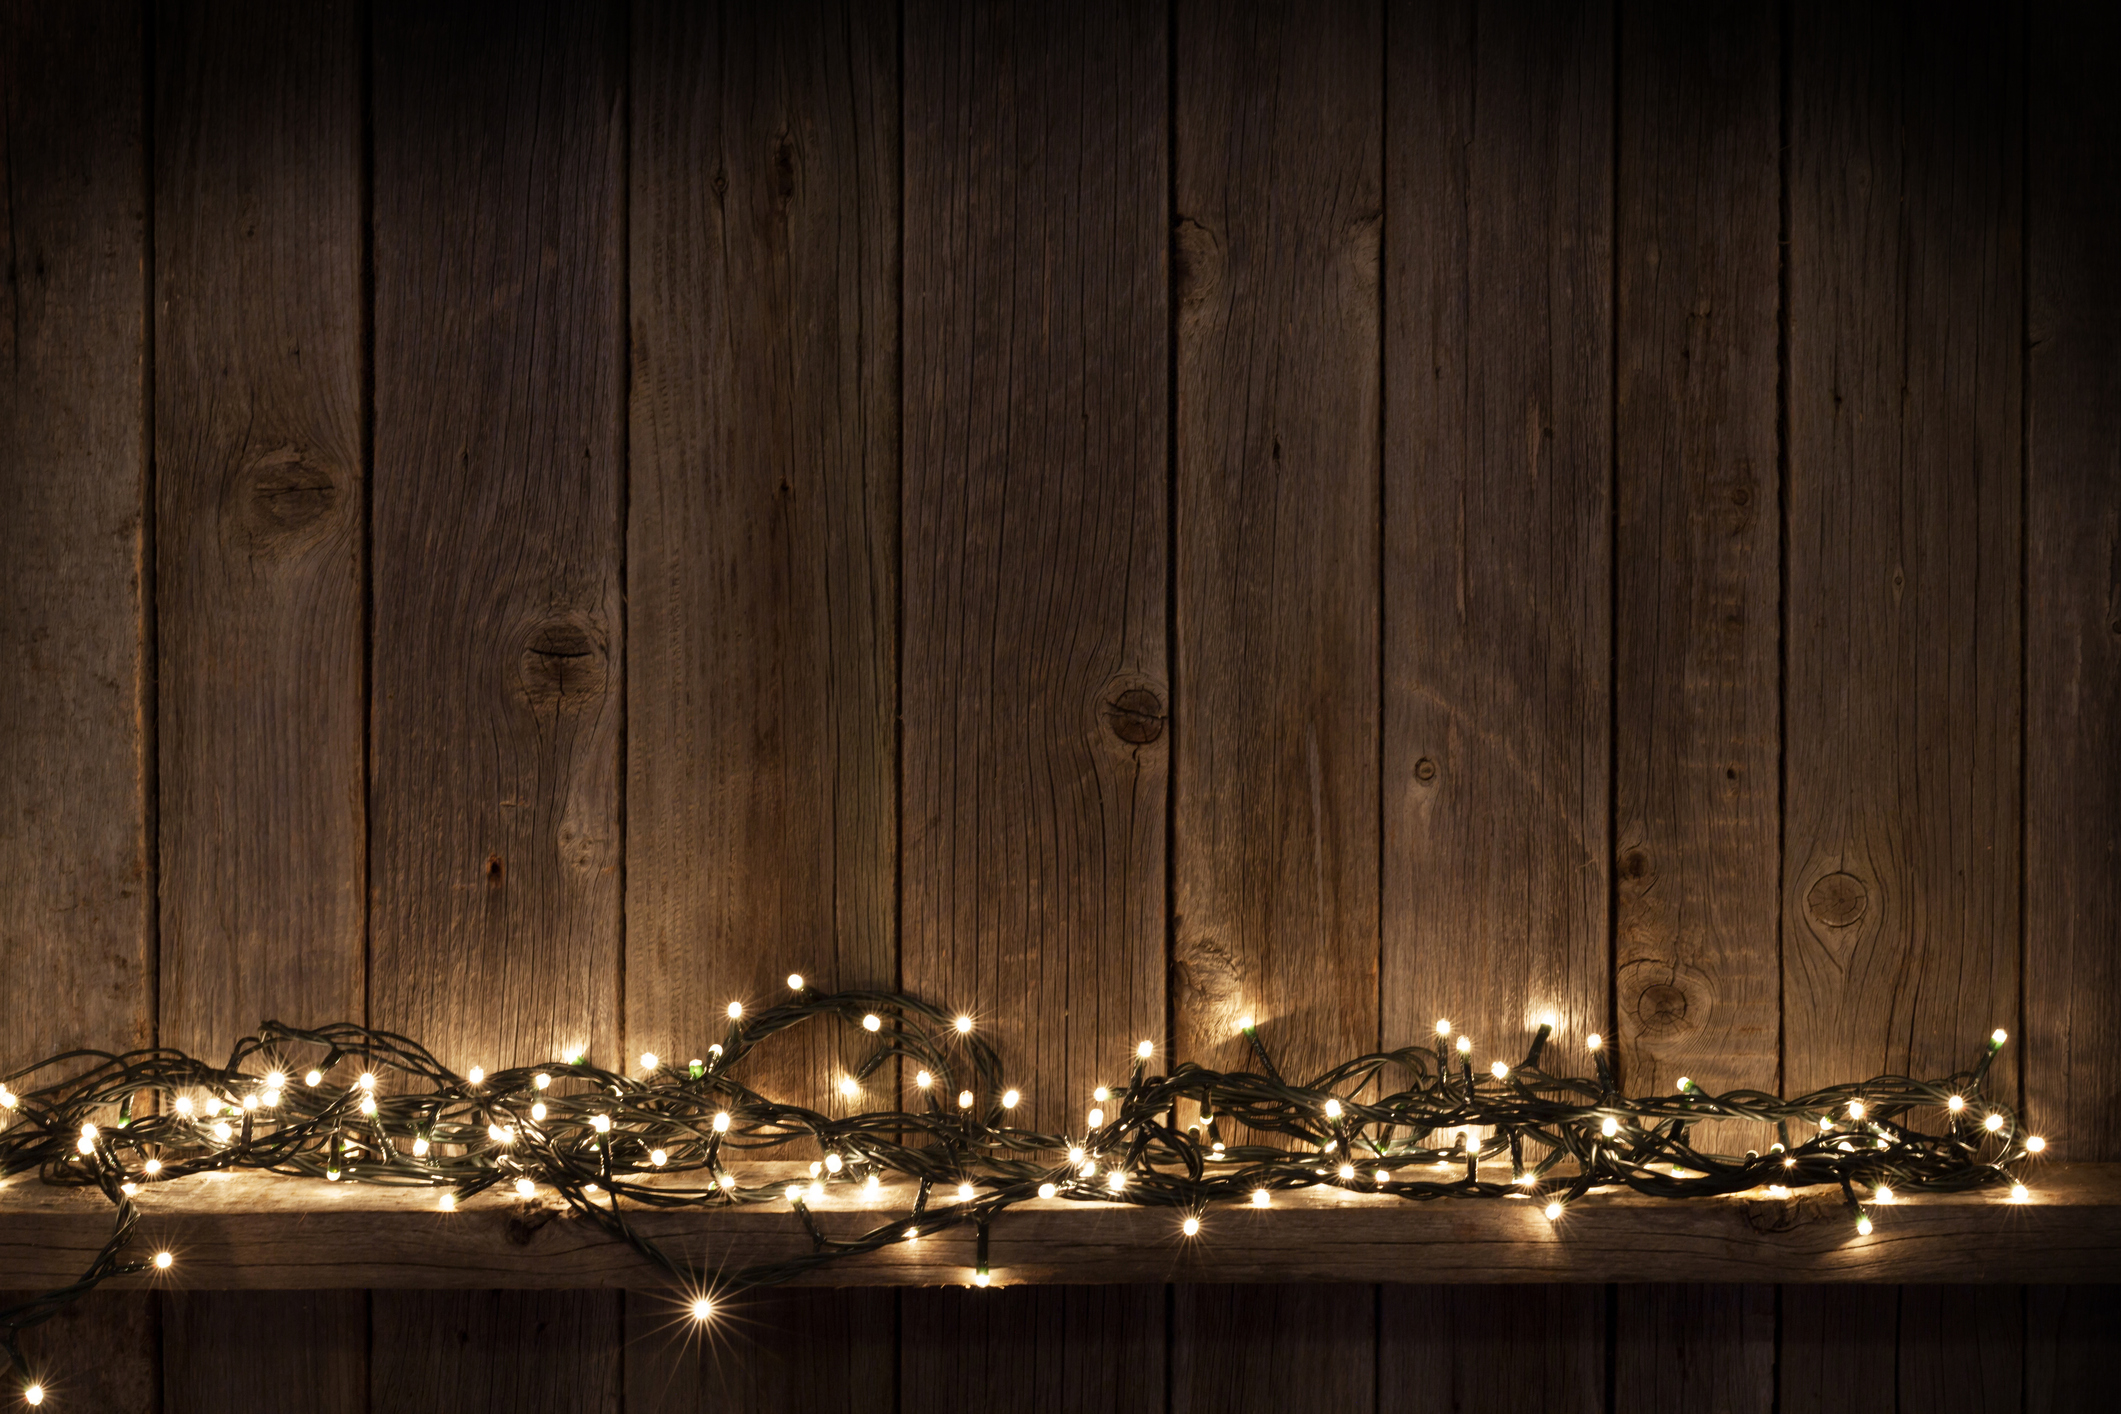 Gyakorlatilag a lakás bármelyik pontjába elhelyezhetünk egy fényfűzért. Nem kell dúldíszíteni, karácsonyi csillogó díszekkel megbolondítani. Önmagában is csodaszép!